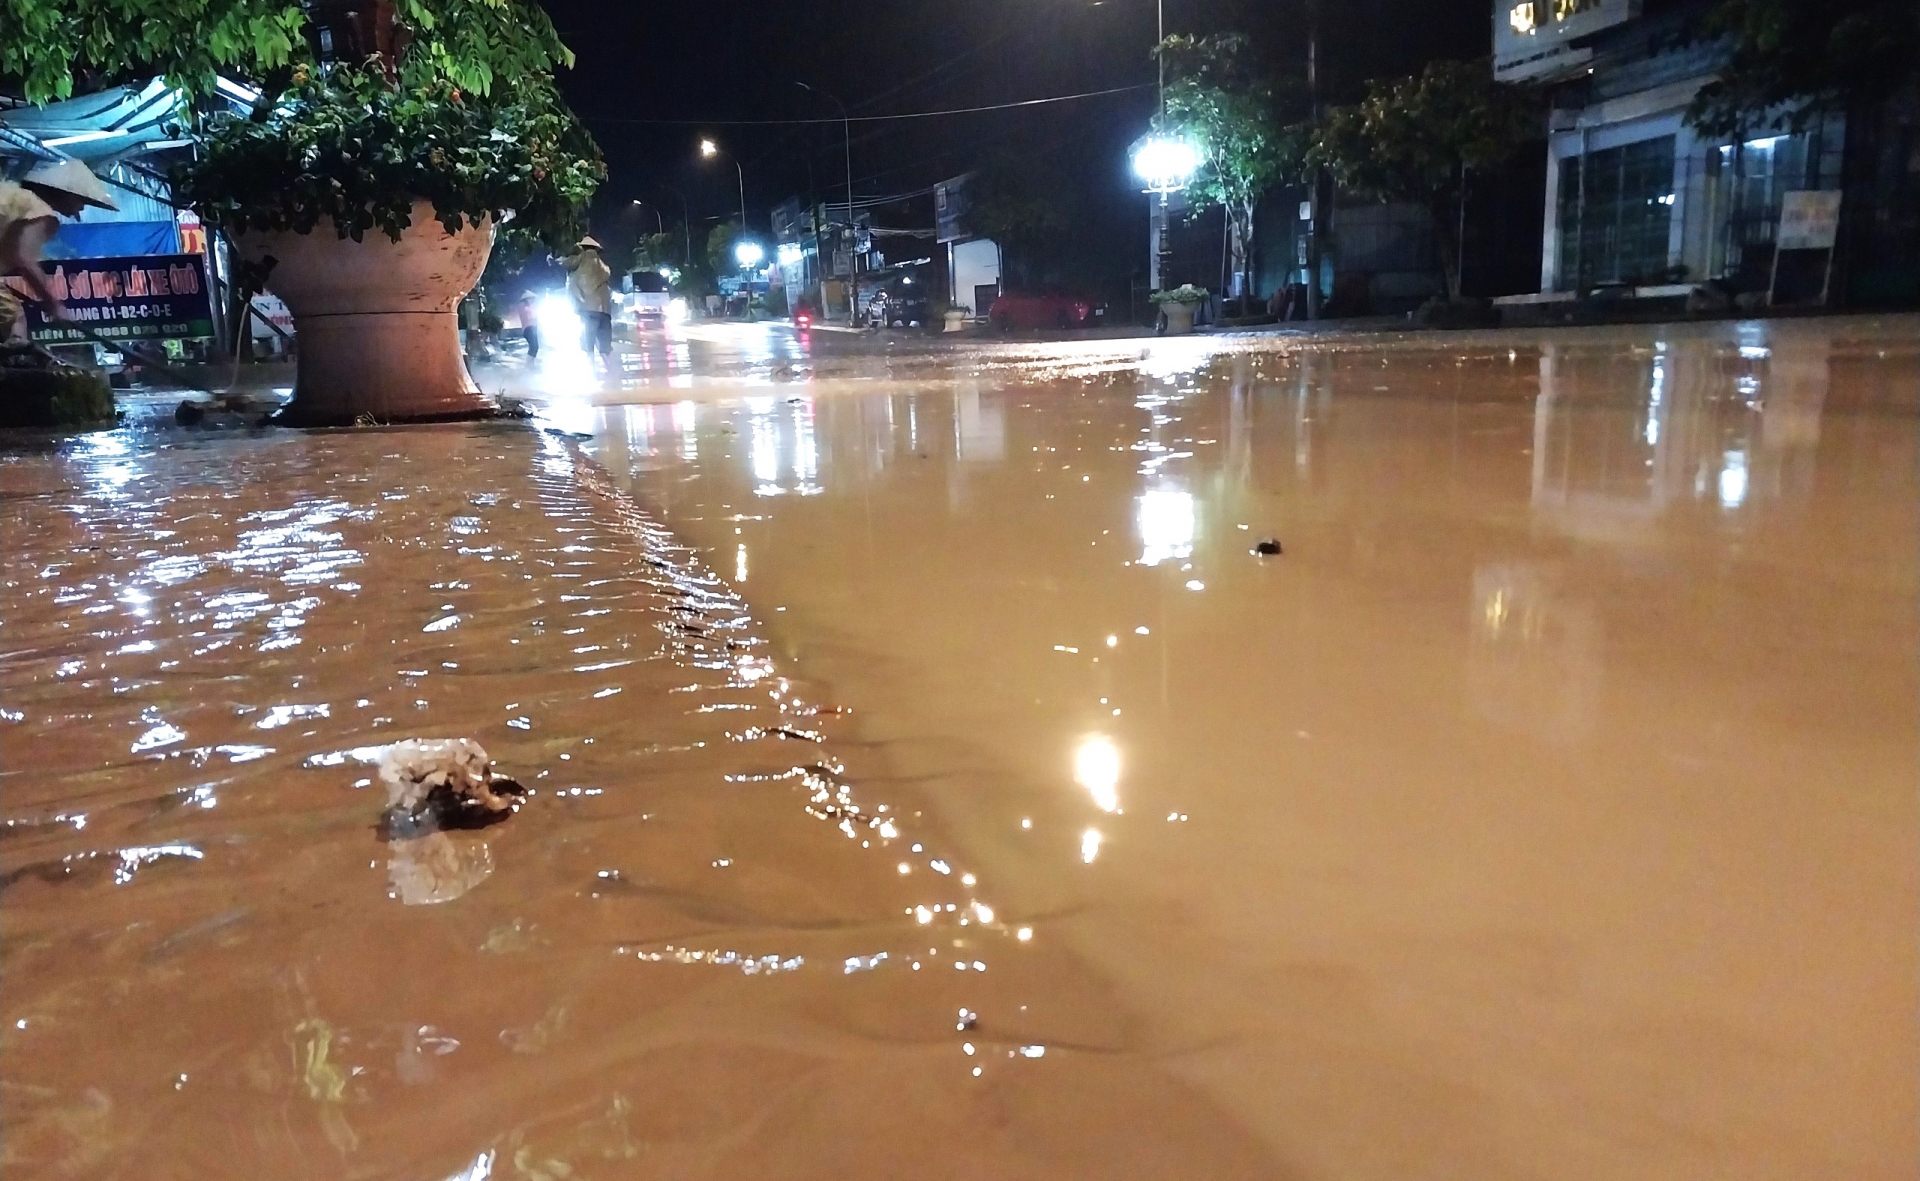 Bùn đất nhầy nhụa phủ kín mặt đường sau trận mưa lớn gây ngập khiến nhiều người lưu thông xe máy qua lại bị té ngã